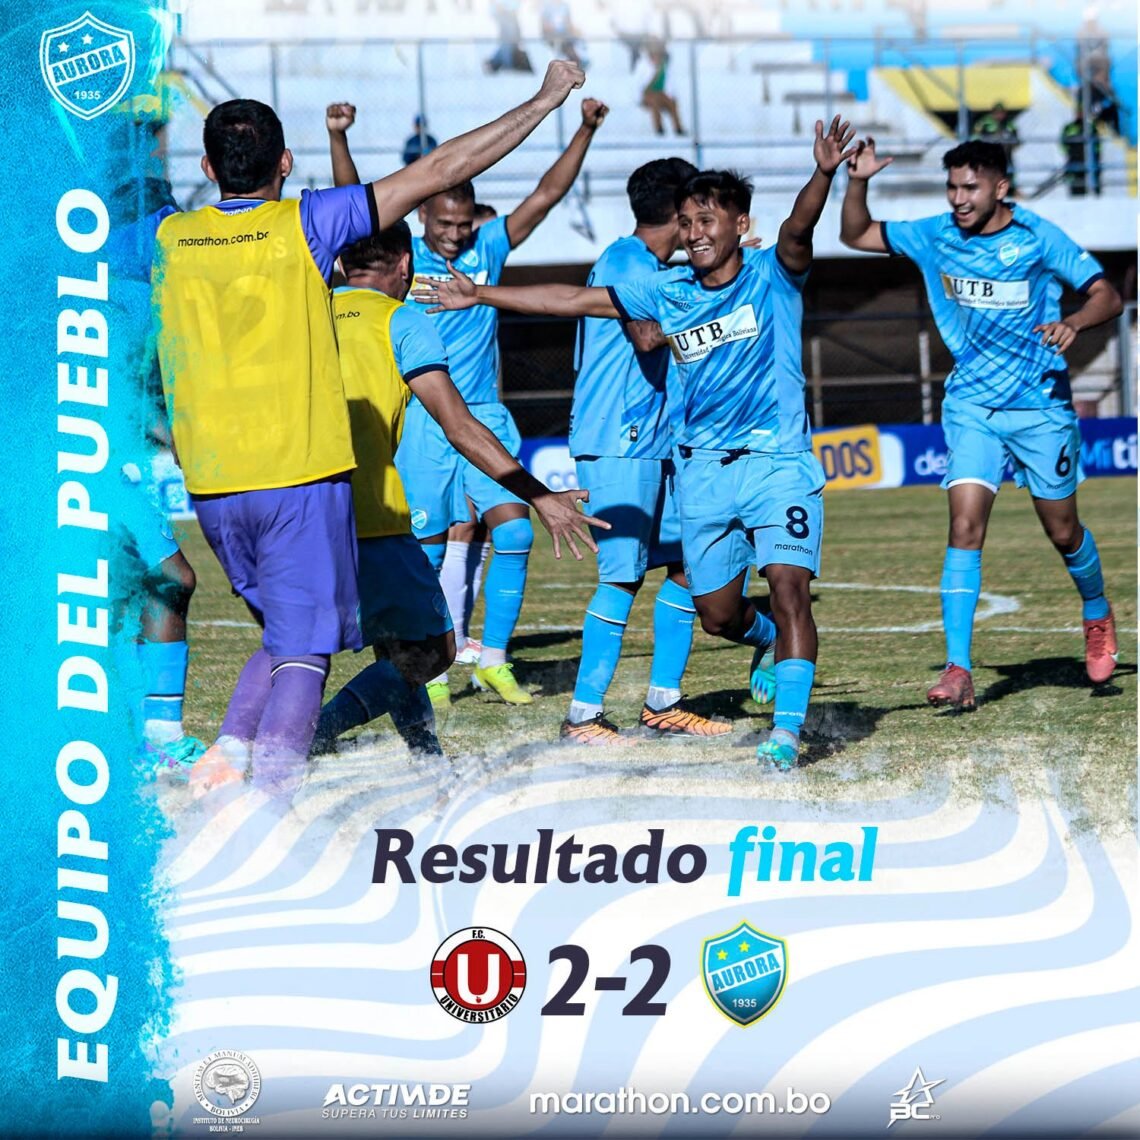 FC Universitario (2) – (2) Aurora